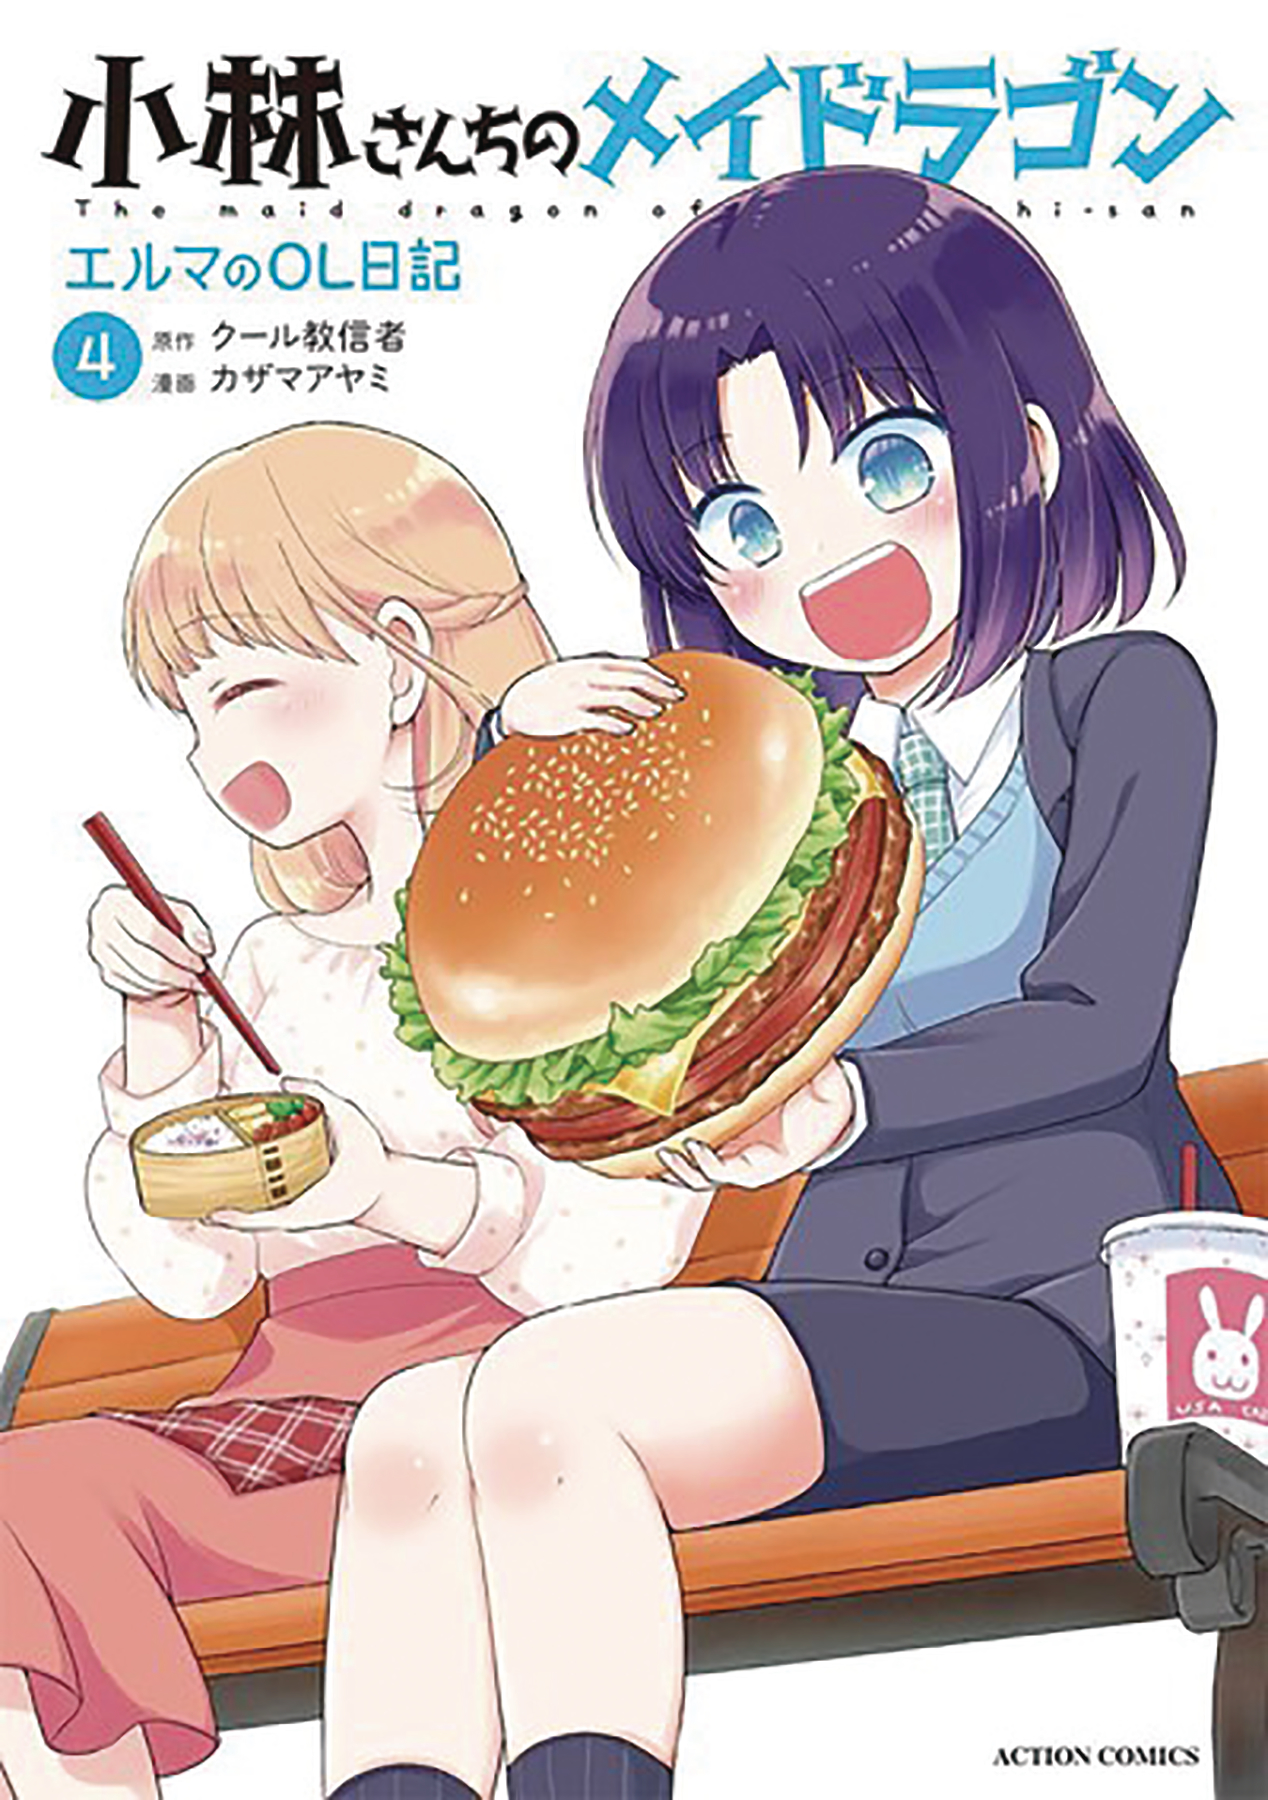 Miss Kobayashi's Dragon Maid Elma Diary Manga Volume 4